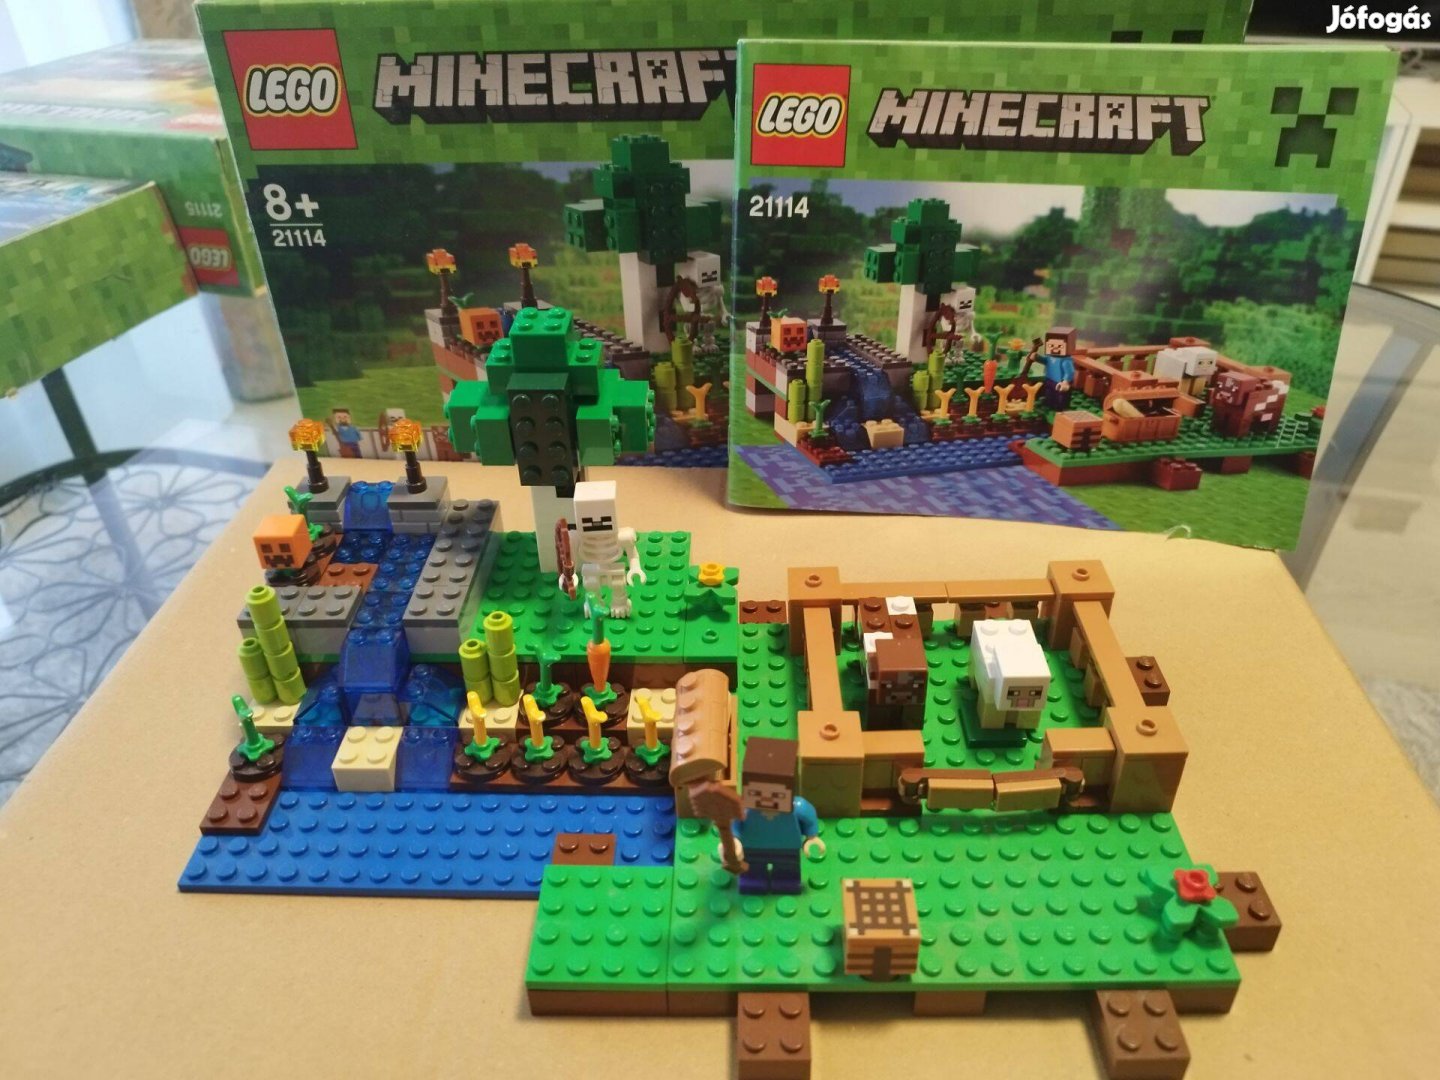 Lego 21114 Minecraft: A farm